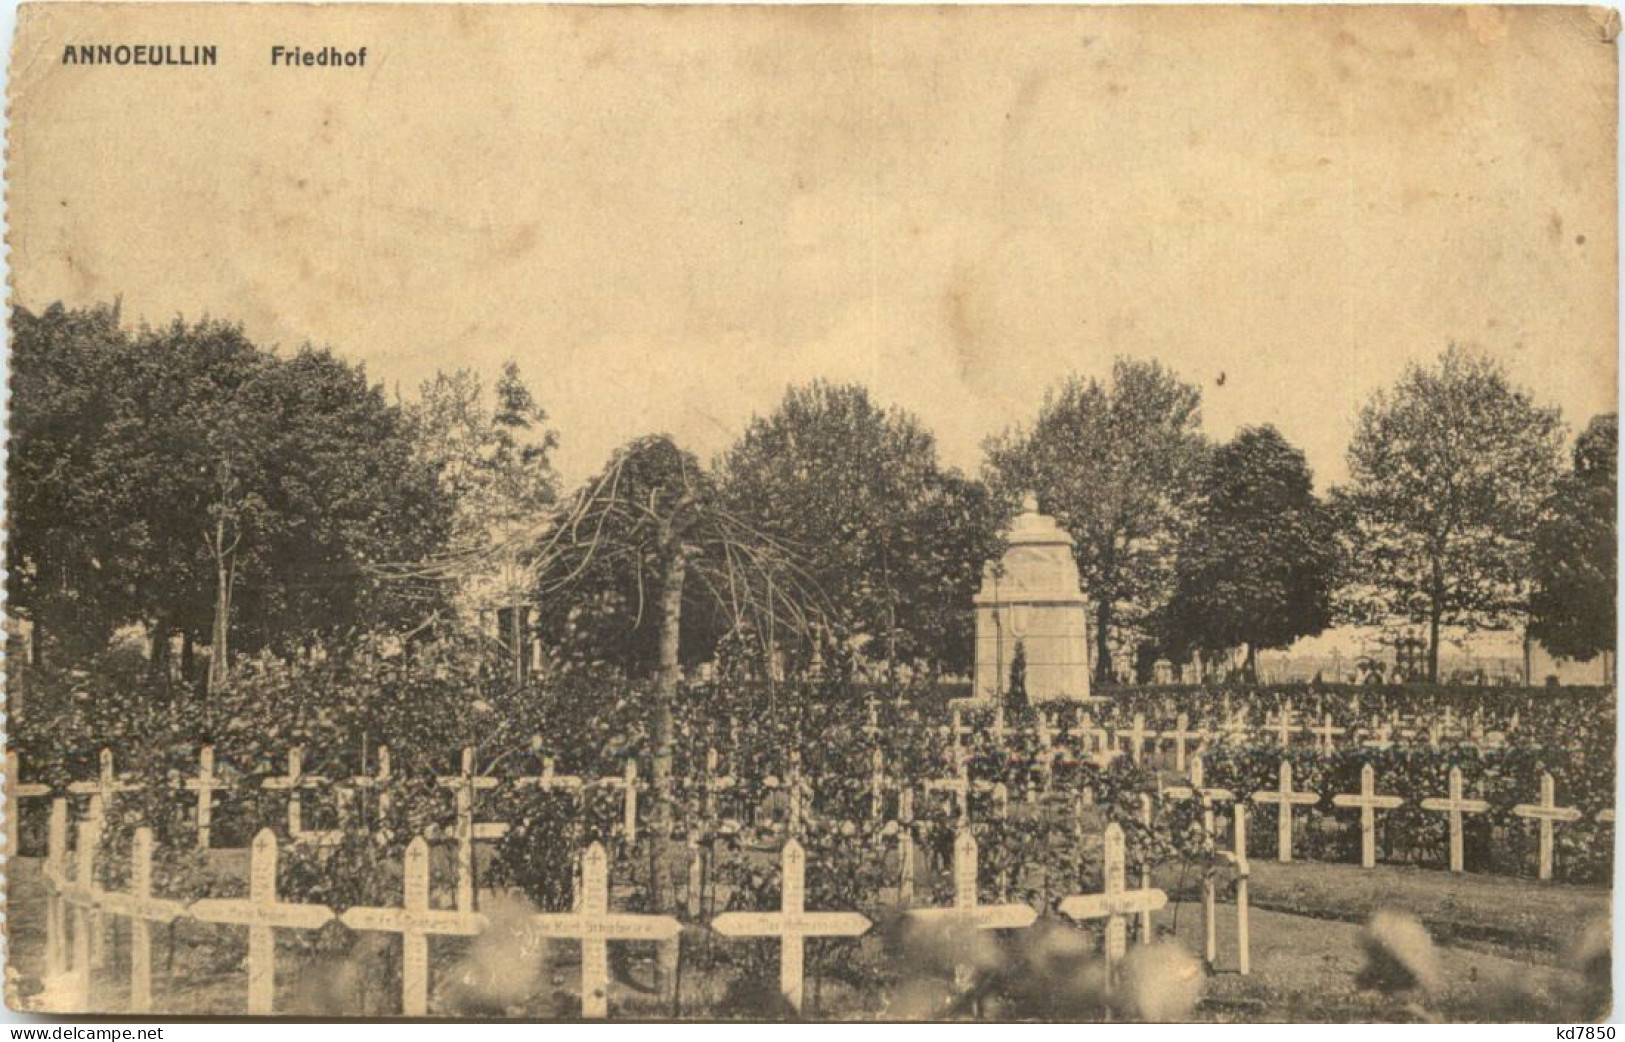 Annoeullin - Friedhof - Feldpost 30. Inf Division - Soldatenfriedhöfen